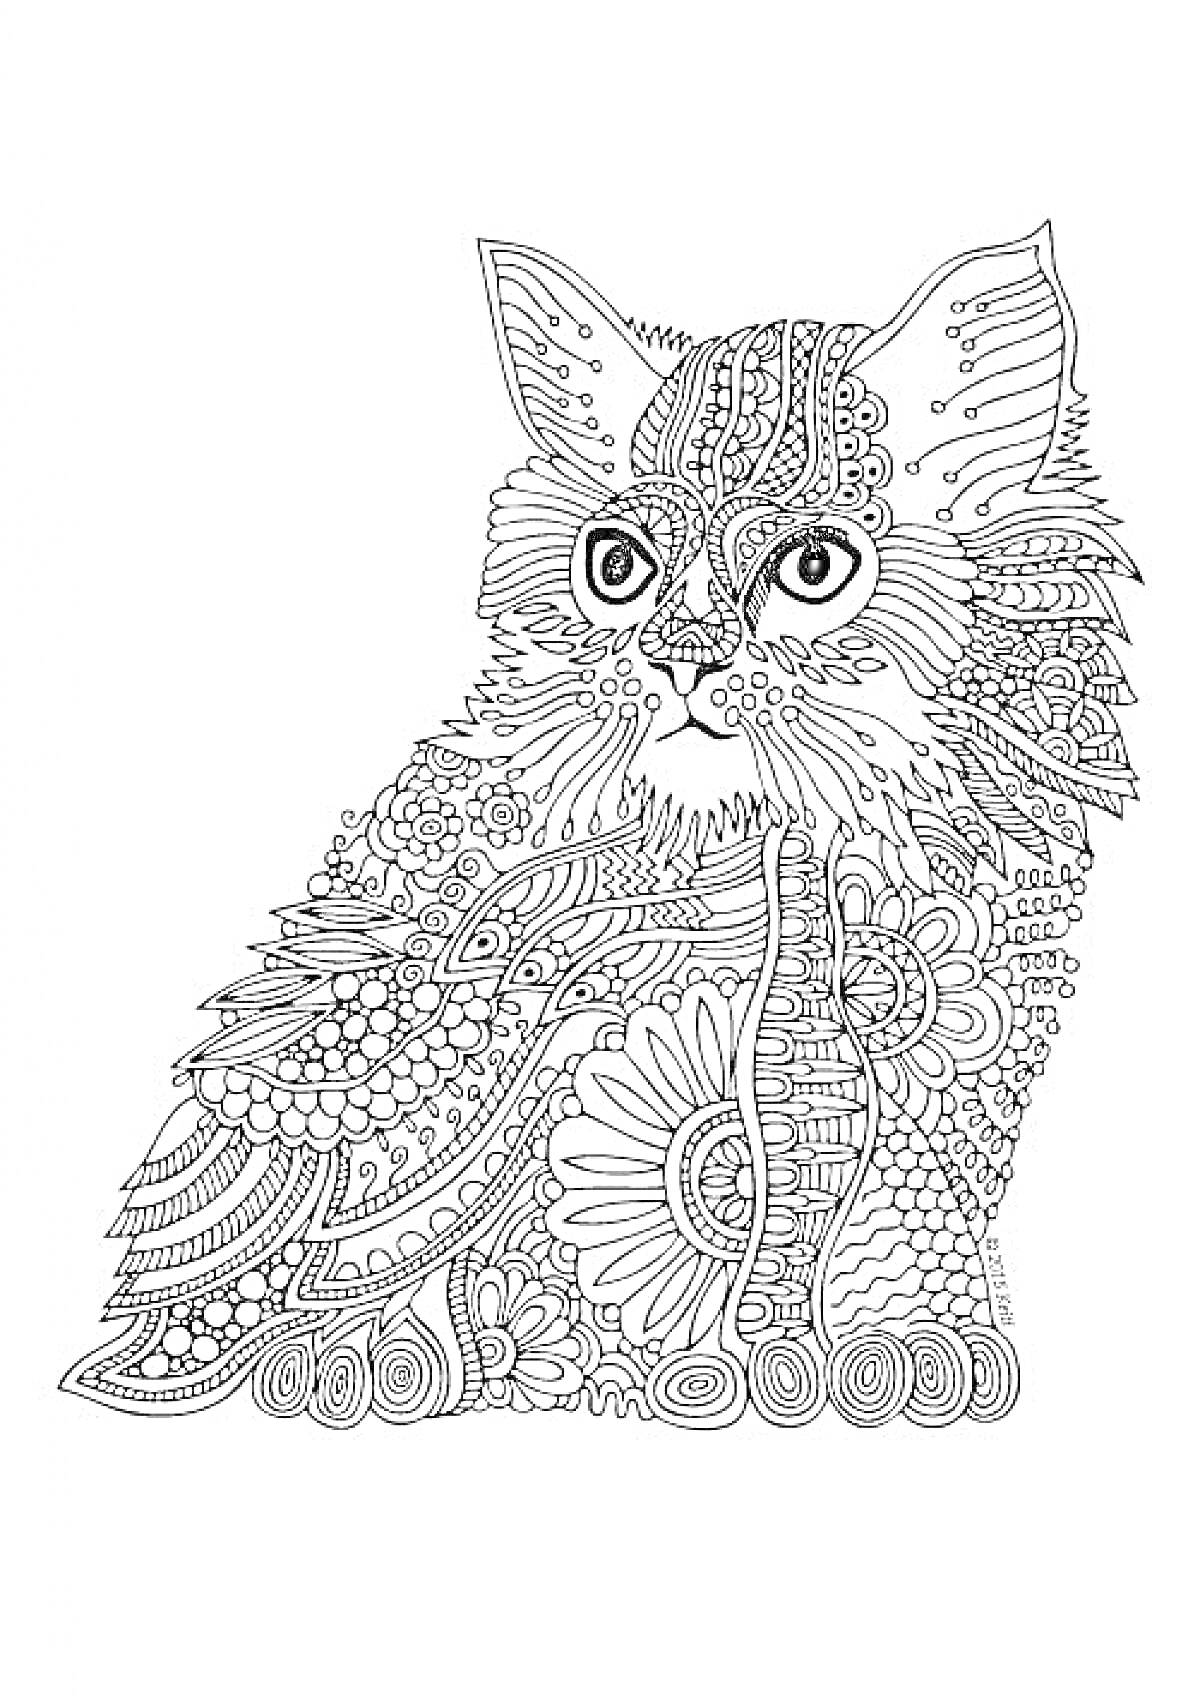 Раскраска Антистресс раскраска с изображением кошки, украшенной изогнутыми линиями, кругами и цветочными орнаментами